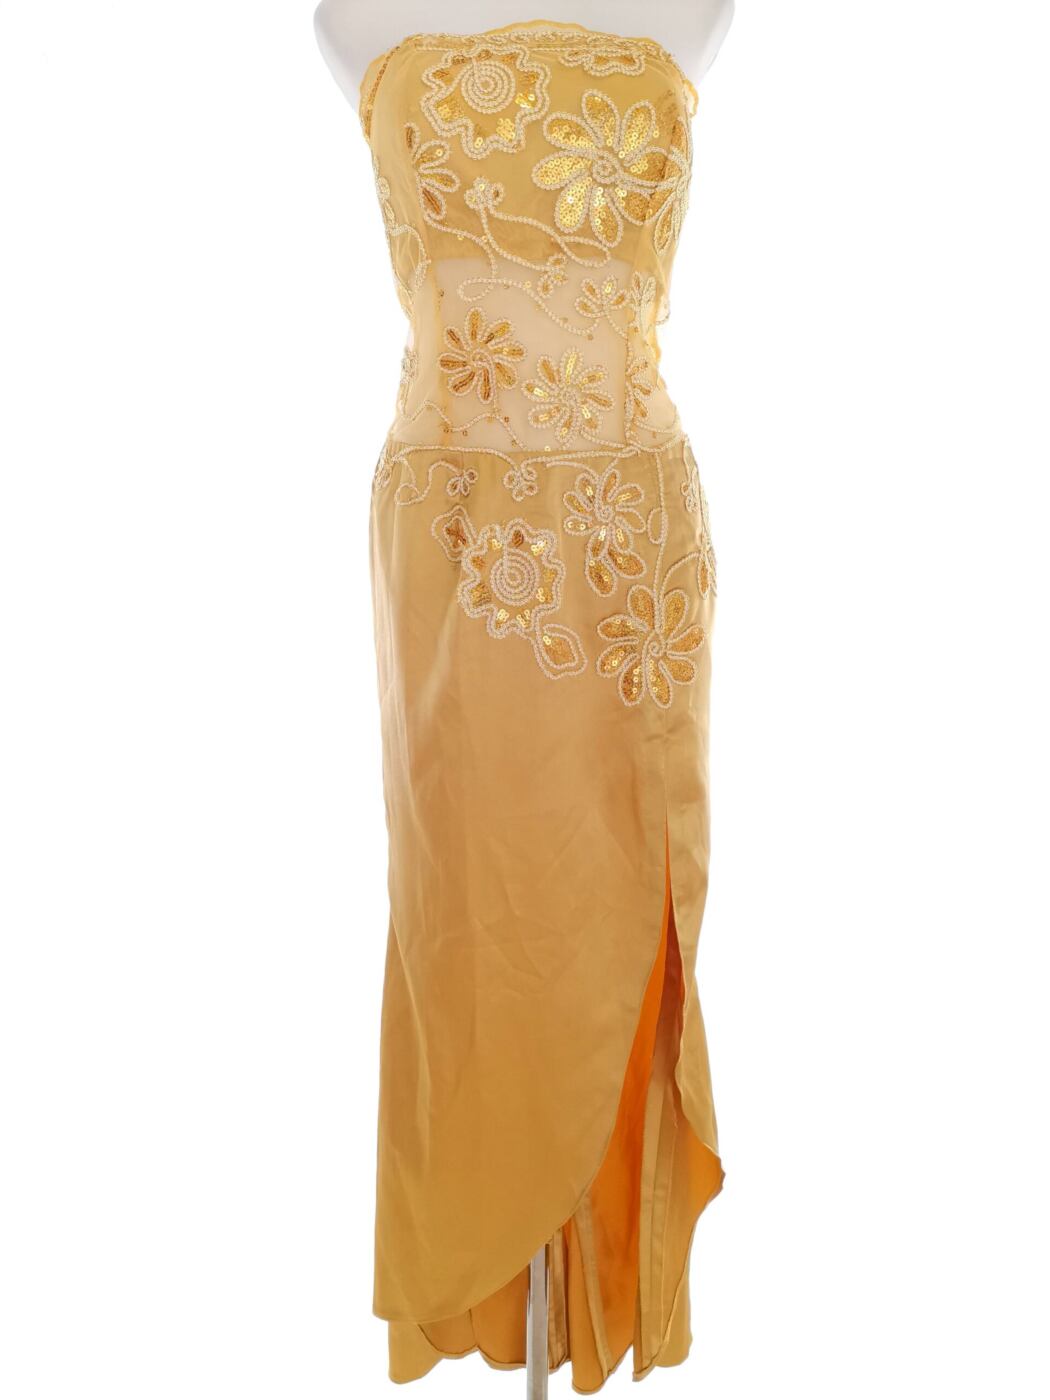 Rozmiar 34/36 Kolor Złoty Odkryte Ramiona Suknia Balowa Sukienka Wieczorowa Bezrękawnik Hi-Low